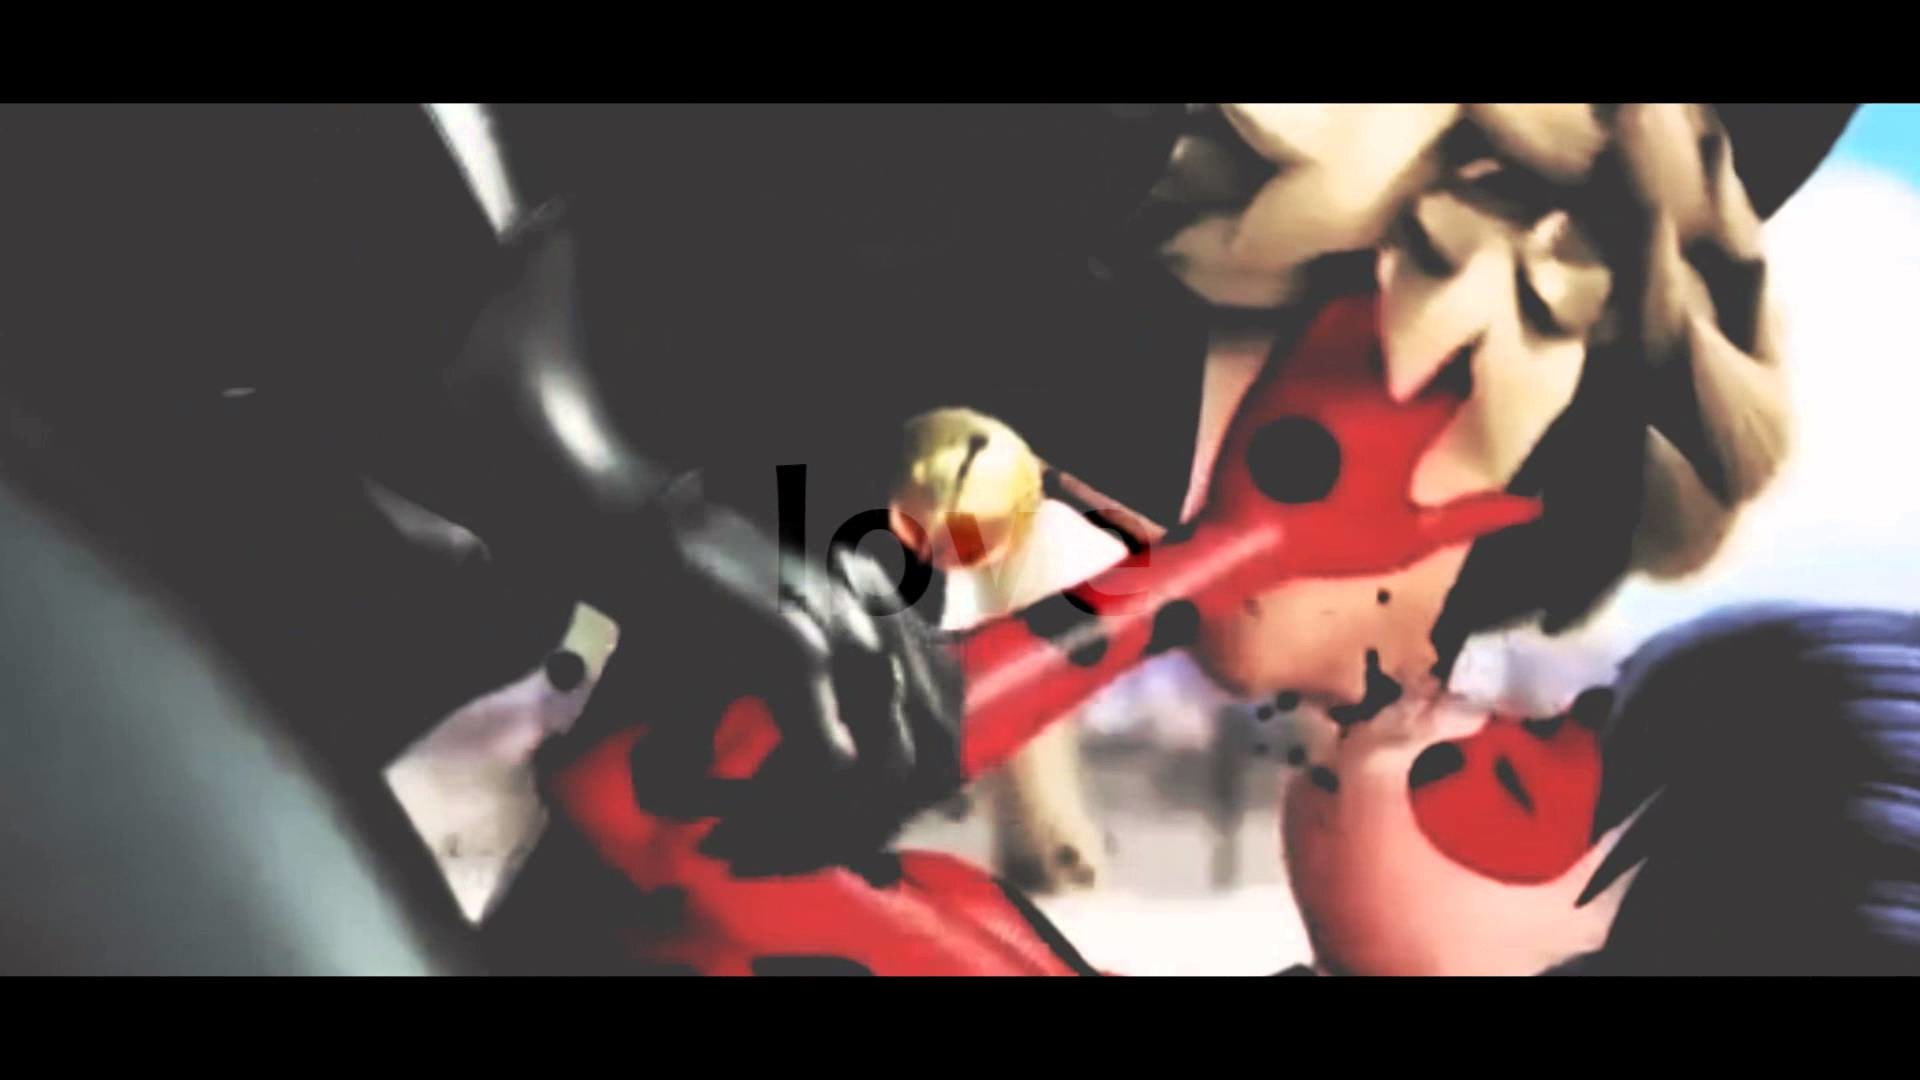 miraculous ladybug: chat noir [cooler than me] vine HD+headphonesâ¡